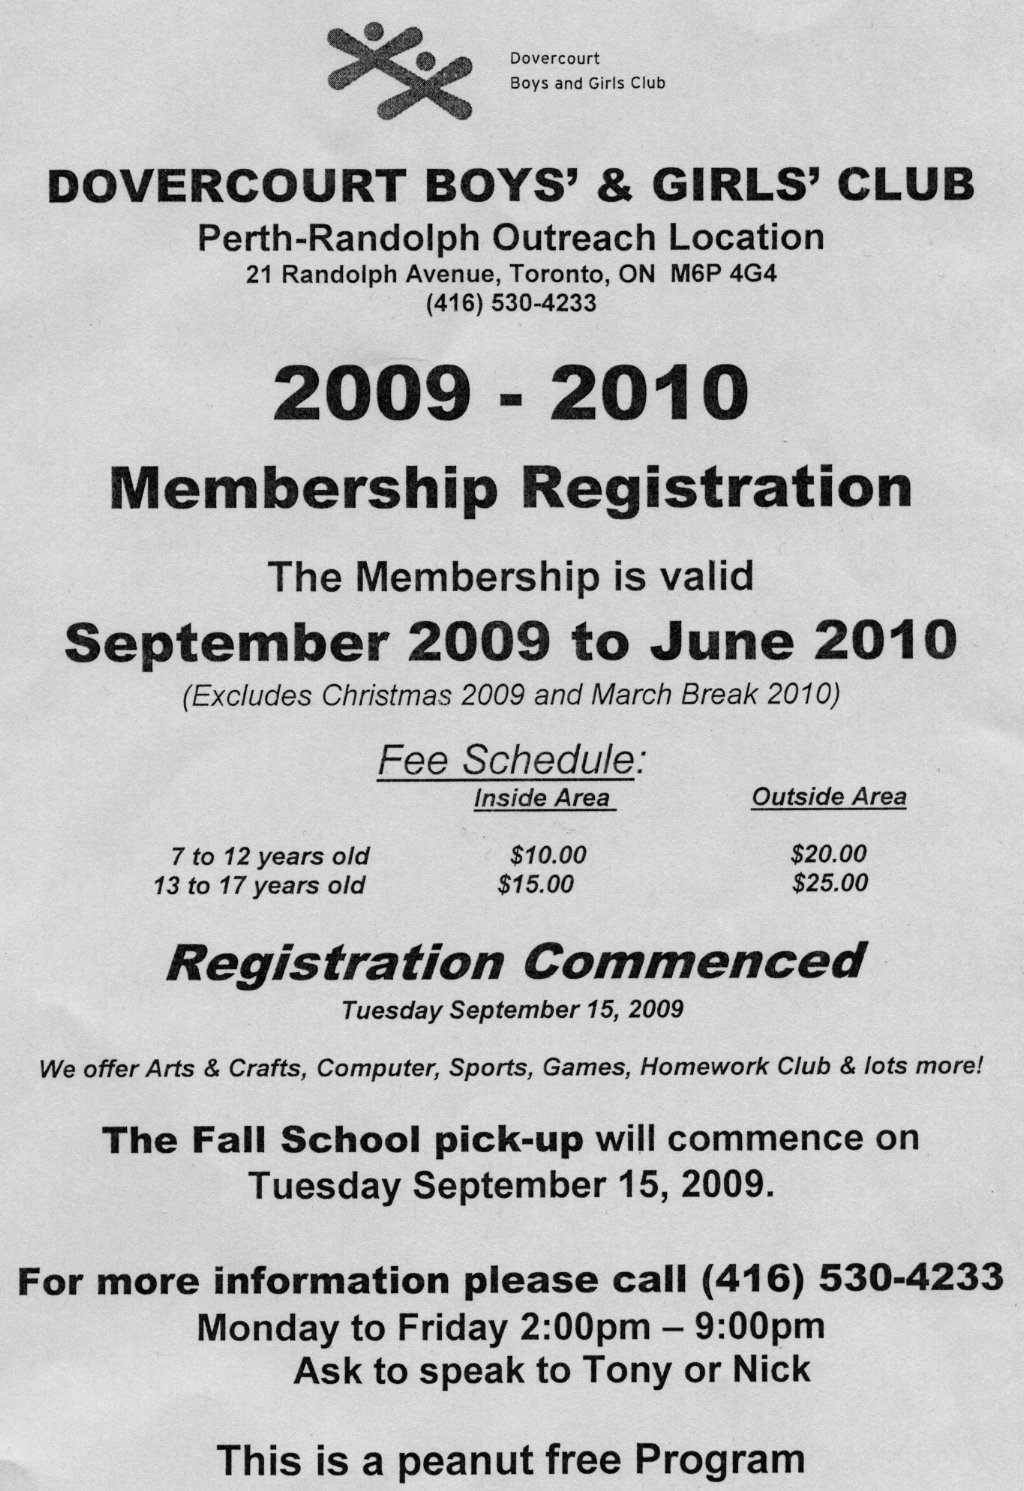 Boys and Girls Club 2009-10 Registration